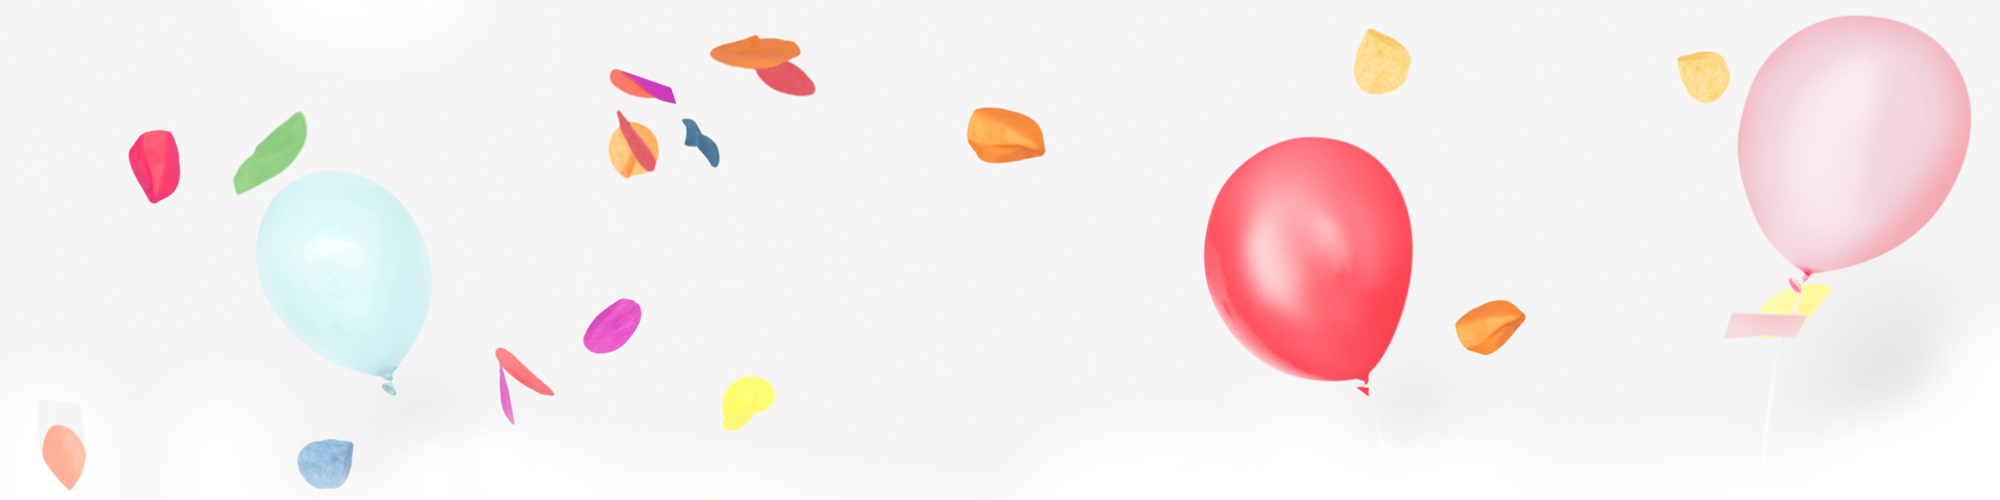 Une atmosphère festive avec des ballons de couleur rose corail, rose et bleu dragée